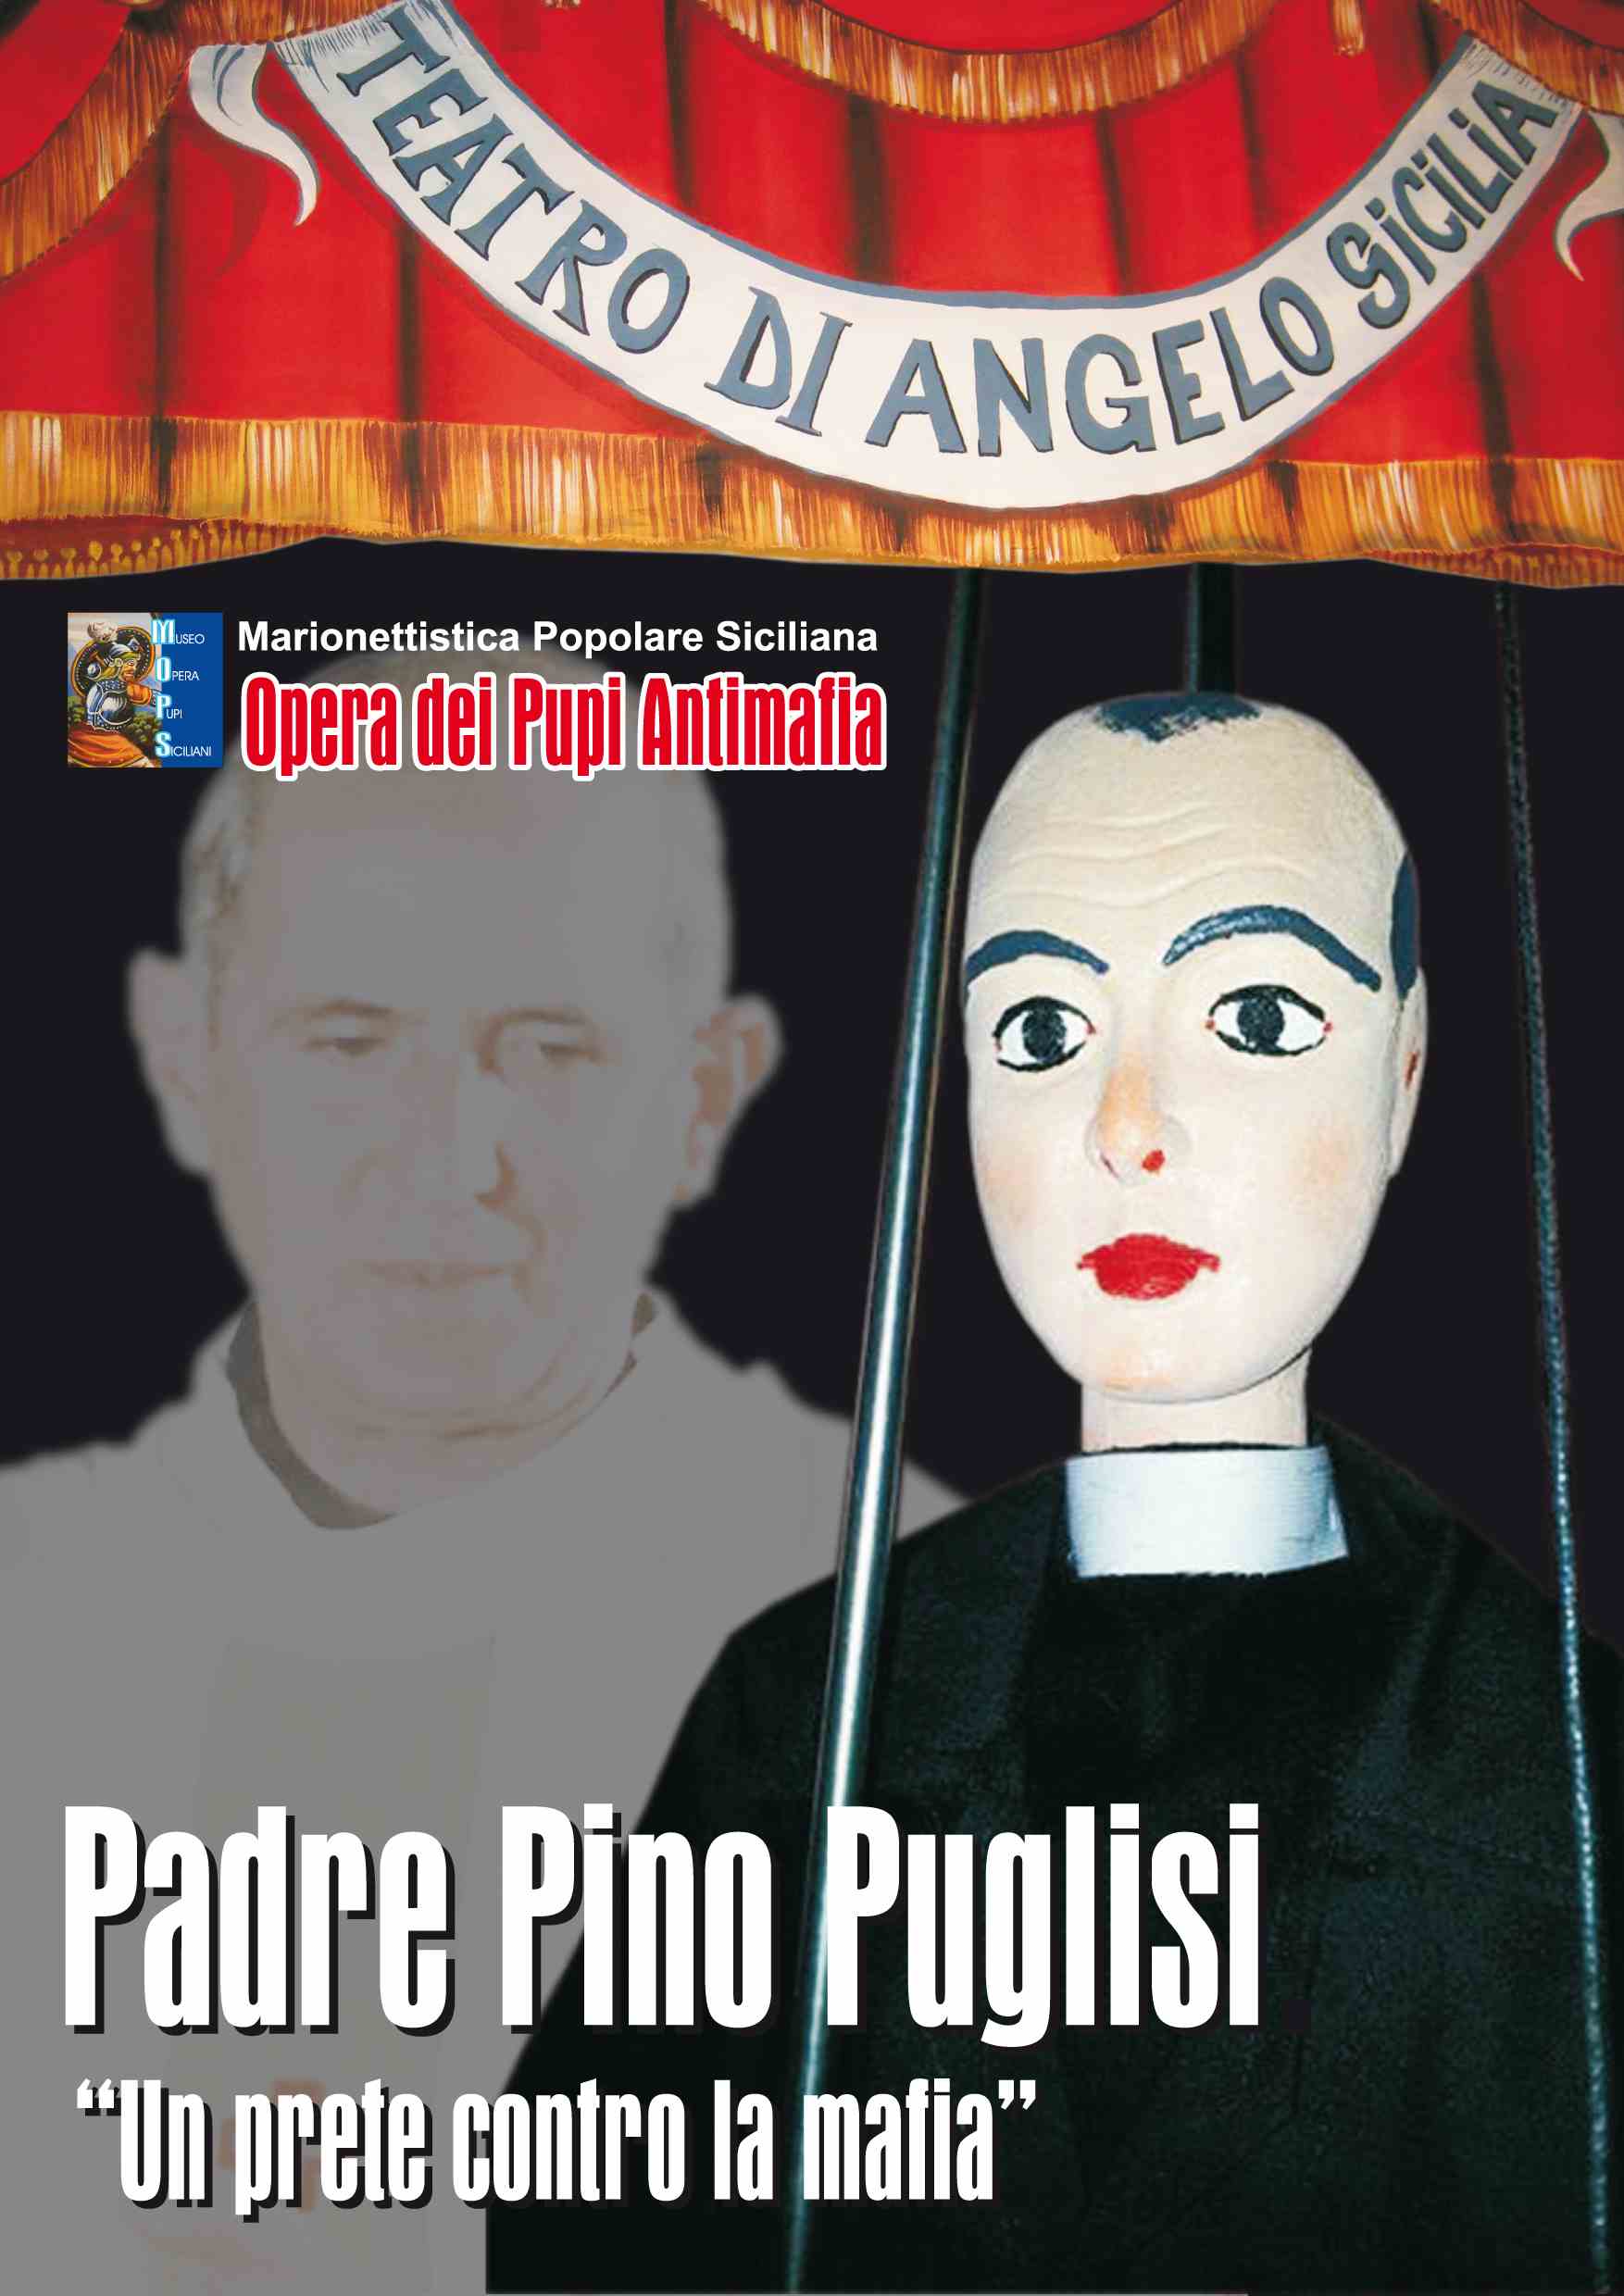  Spettacolo dei pupi  al Teatro Brancaccio su Padre Pino Puglisi